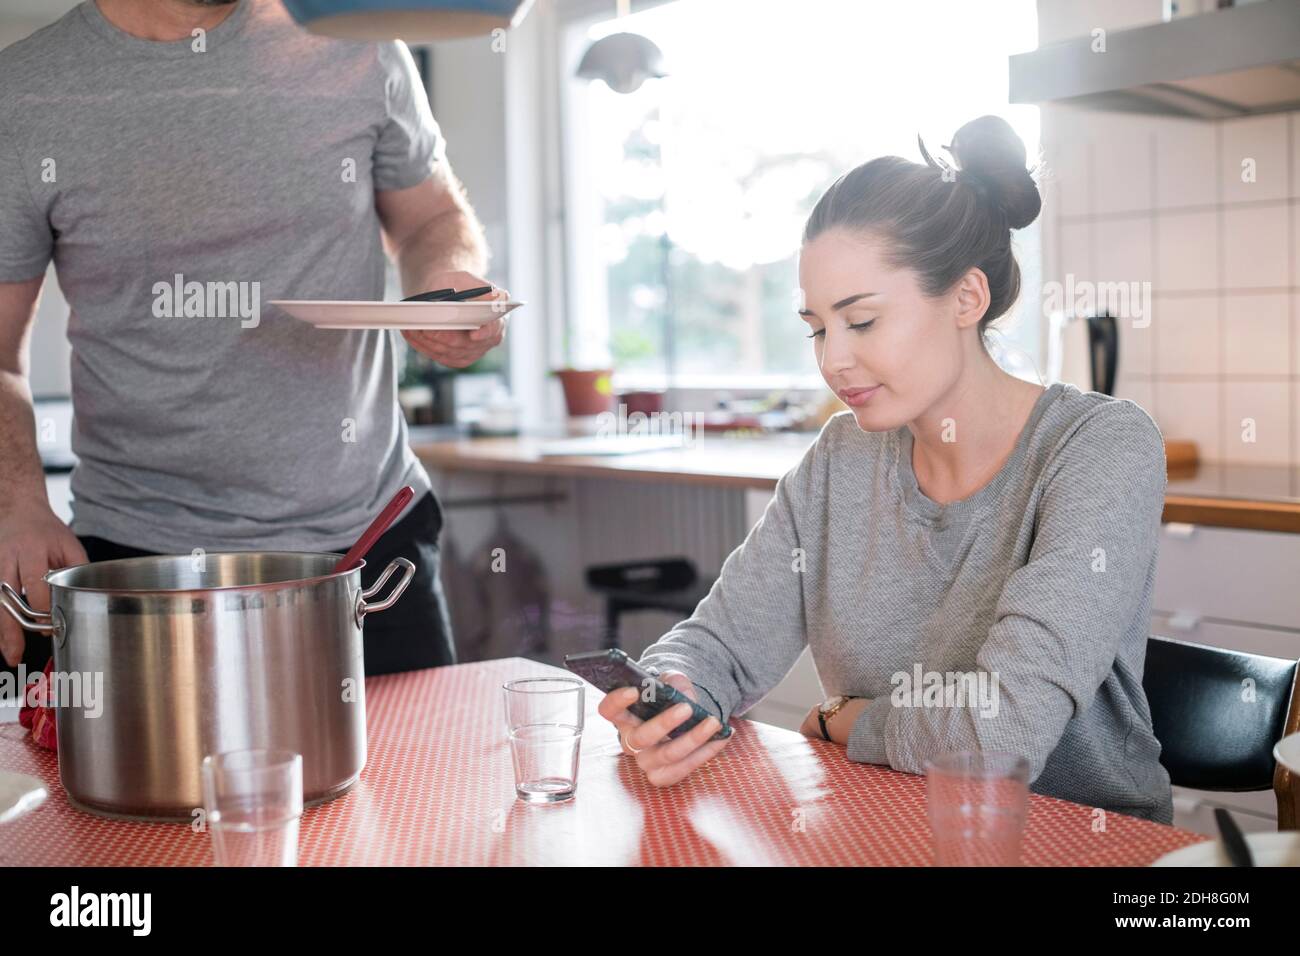 Mittelteil des Vaters hält Platte, während Tochter Smartphone verwenden Am Esstisch in der Küche Stockfoto